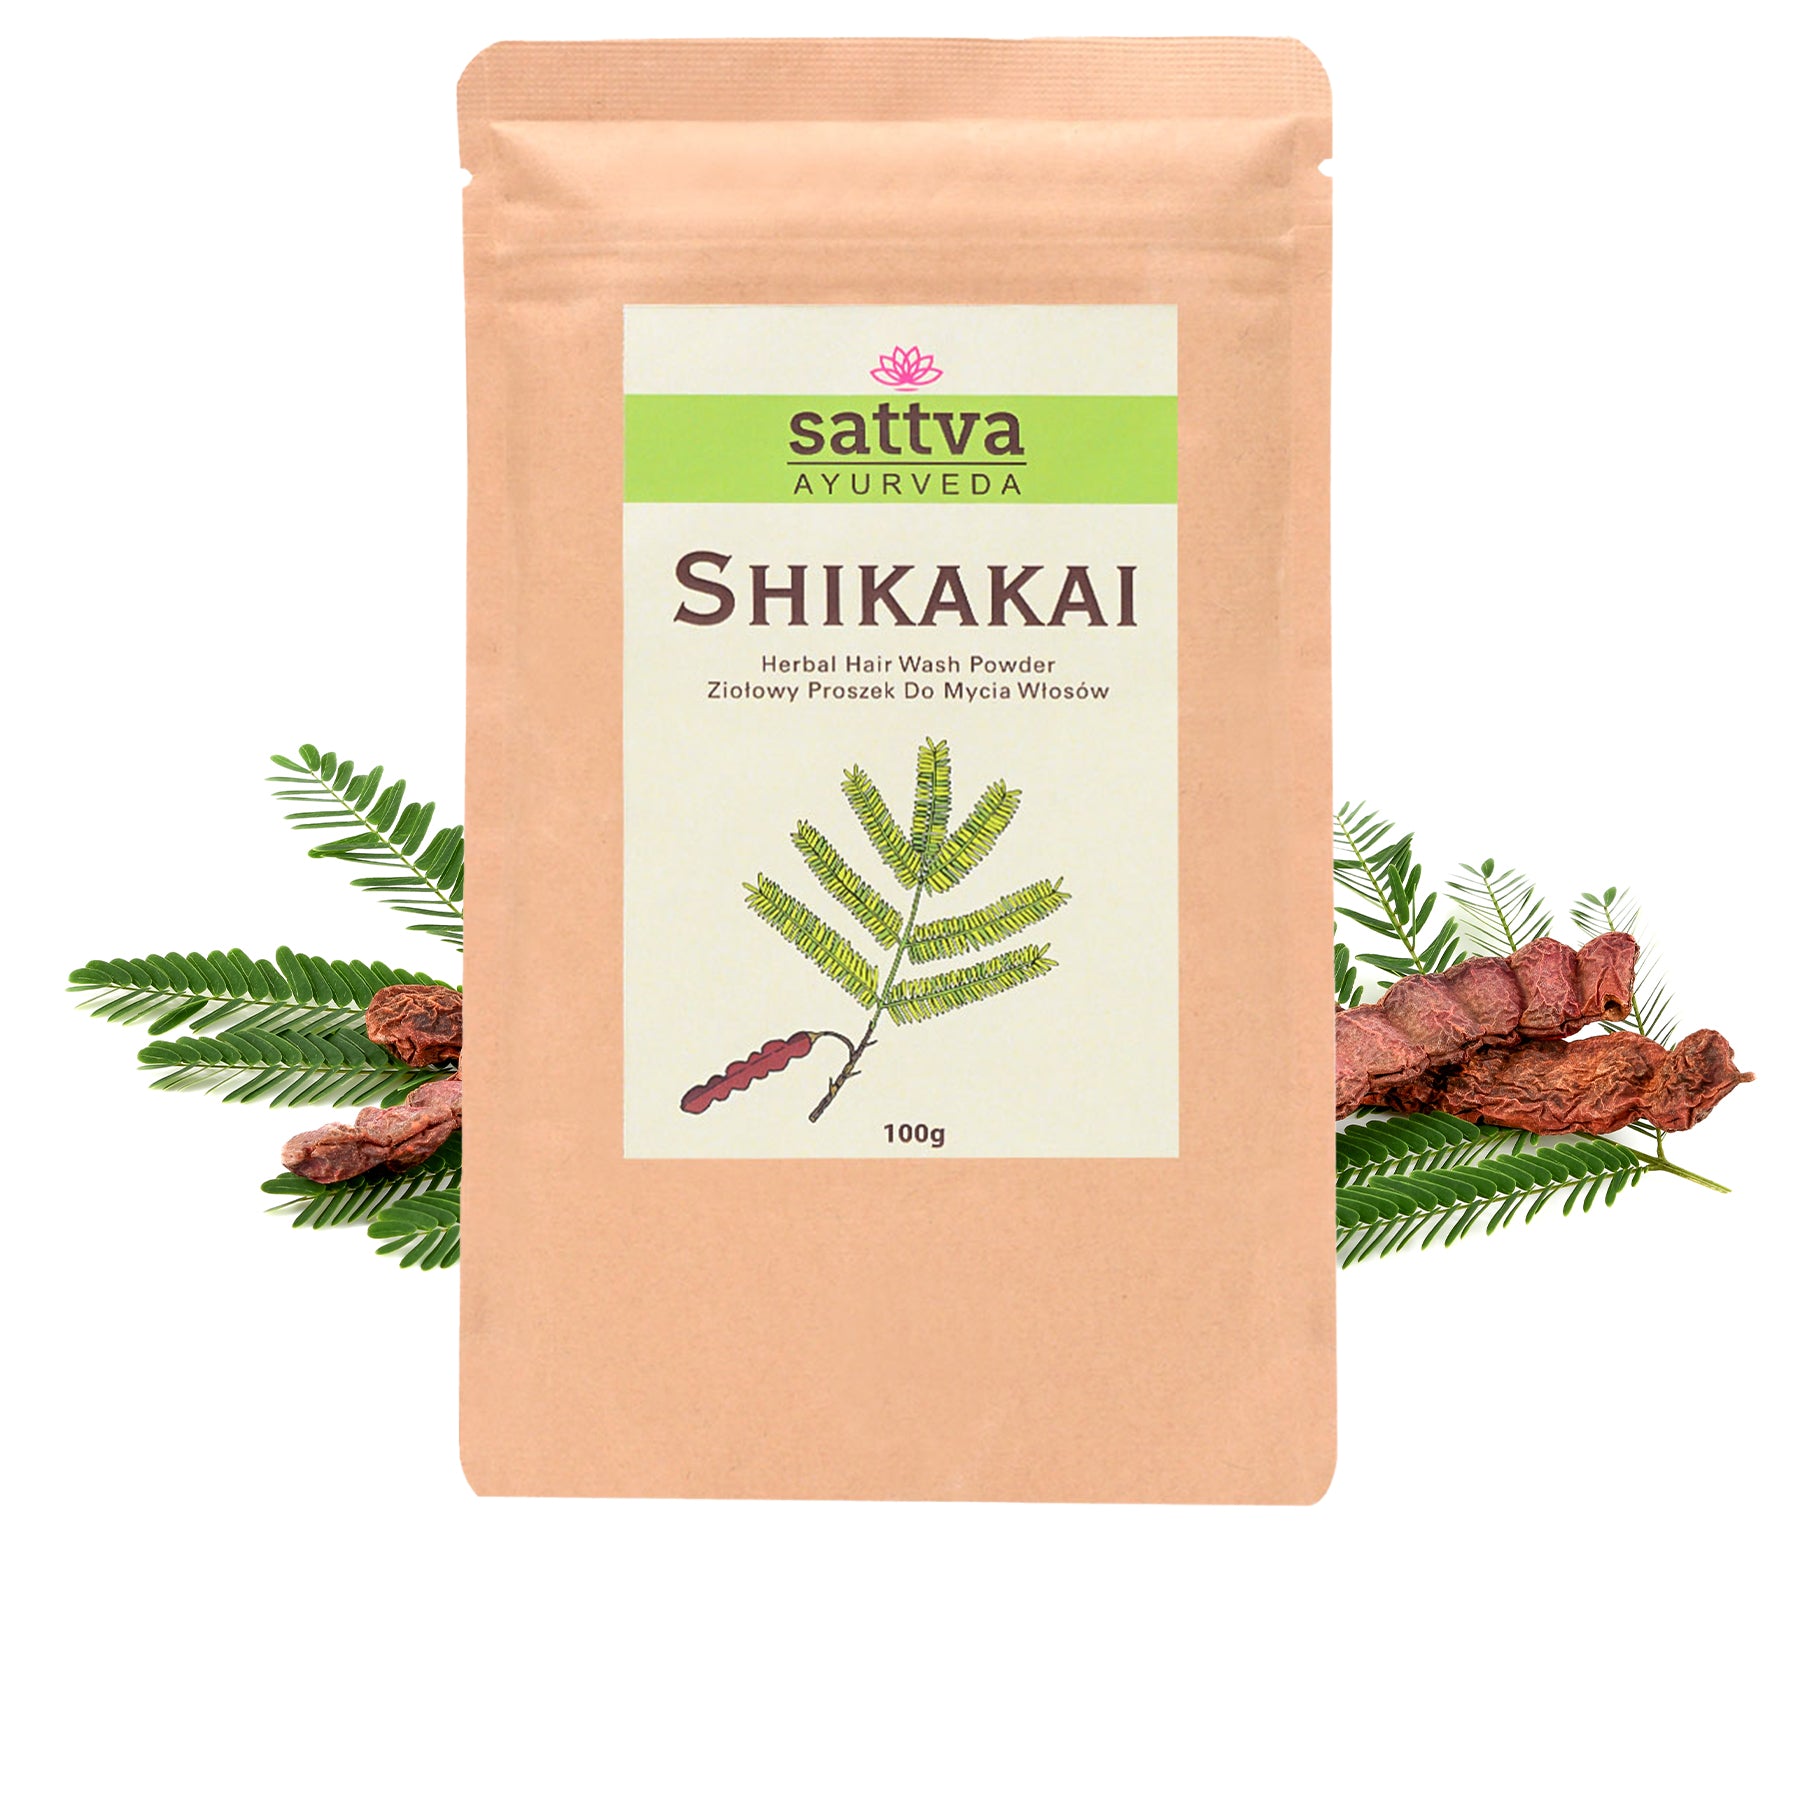 Shikakai Herbal Hair Wash Powder